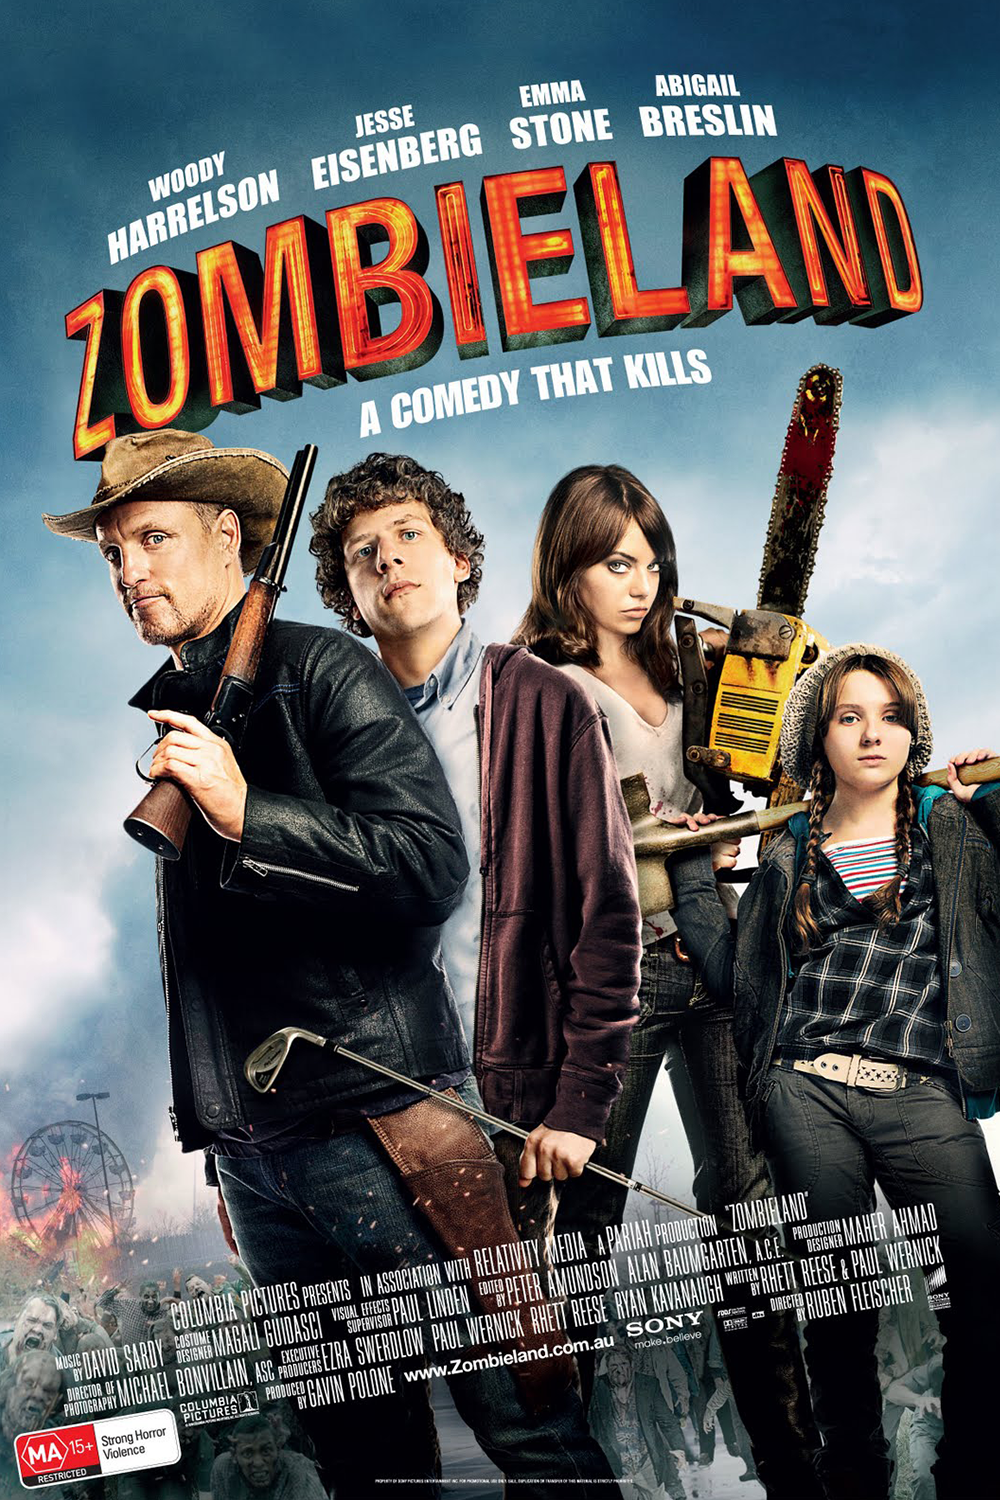 ดูหนังออนไลน์ฟรี Zombieland (2009) ซอมบี้แลนด์ แก๊งคนซ่าส์ล่าซอมบี้